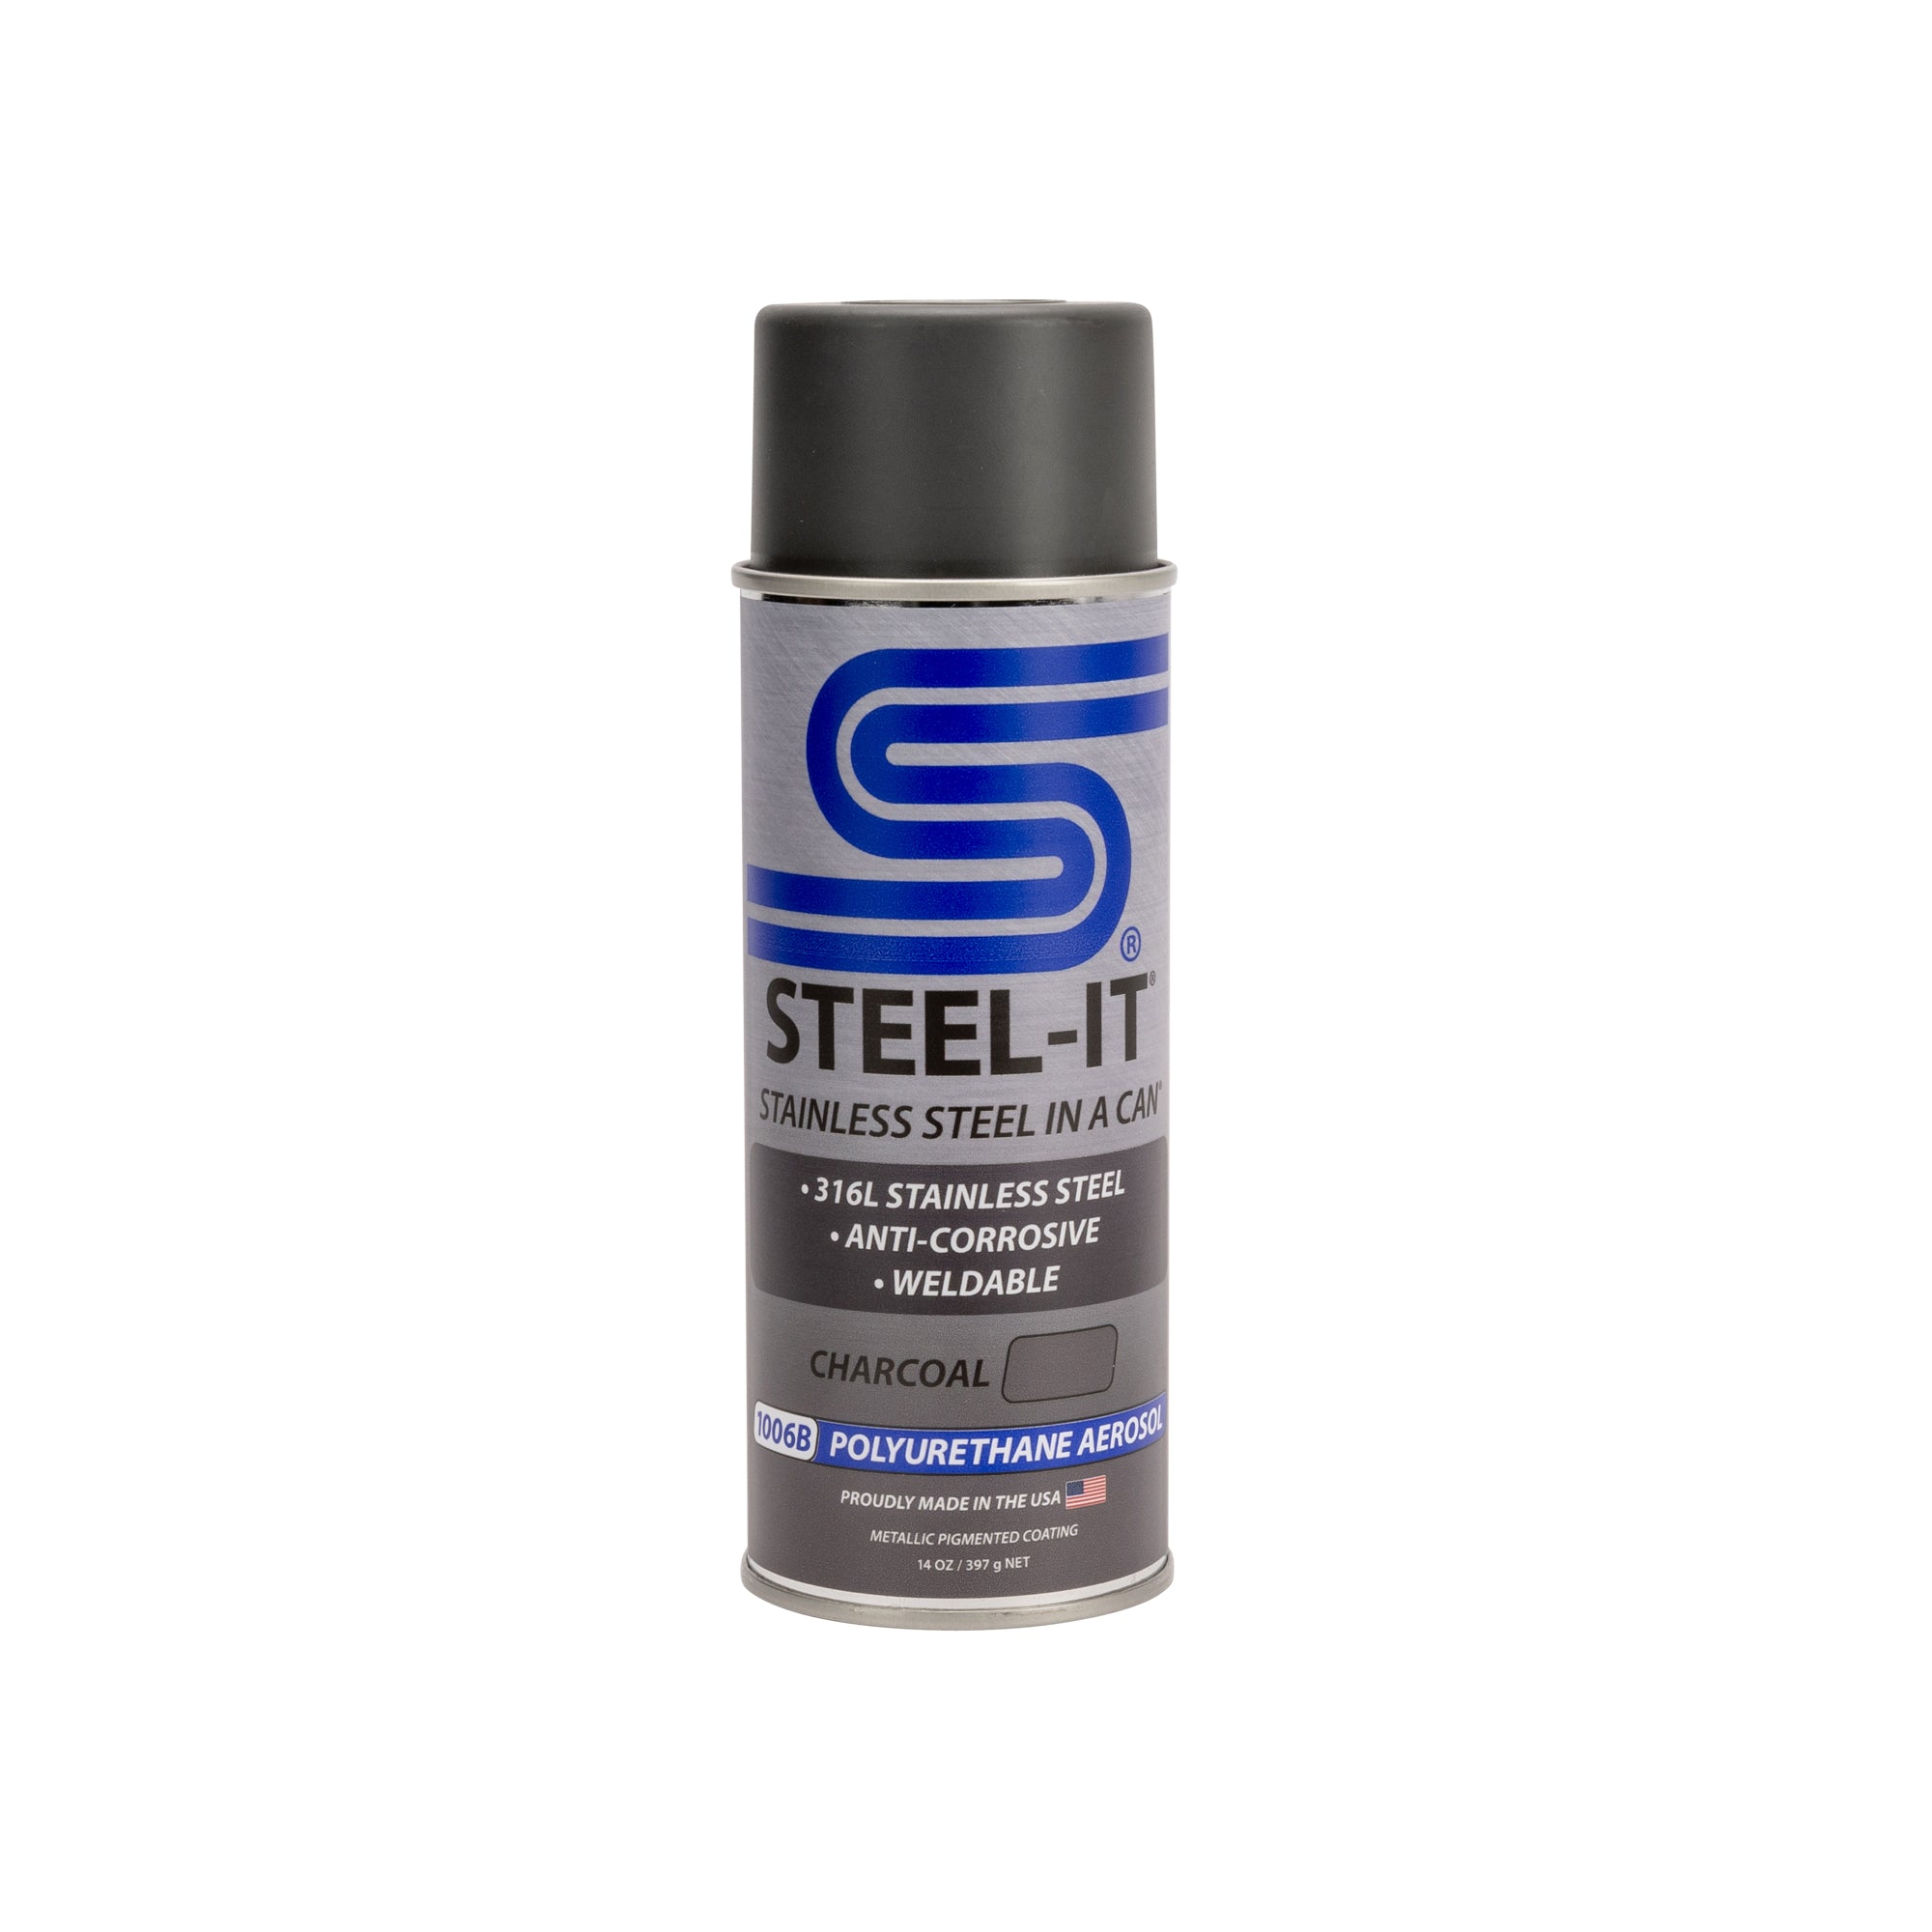 Steel-It Charcoal 1006B Polyurethane Aerosol (Single Can)